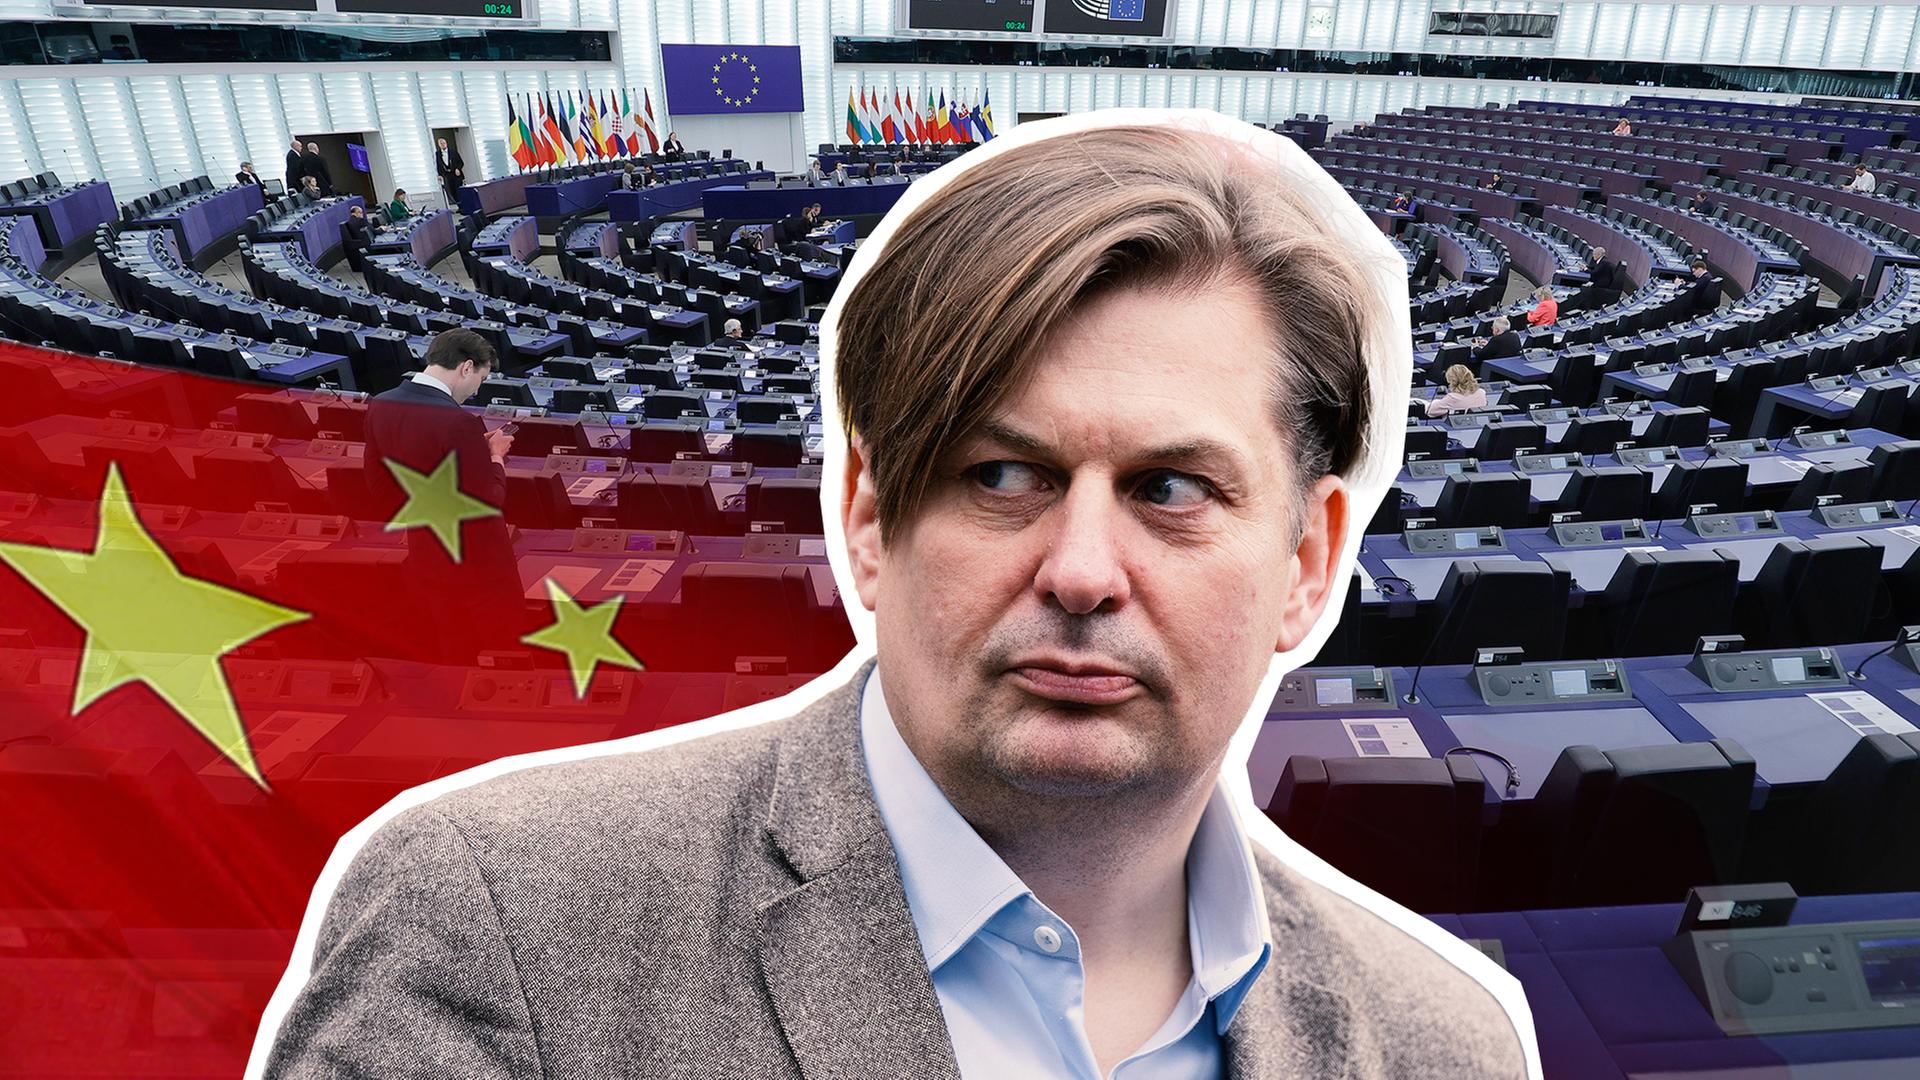 AfD-Spitzenkandidat für die Europawahl Maximilian Krah vor einem Bild des EU-Parlaments. Neben ihm ist eine China Flagge abgebildet. 